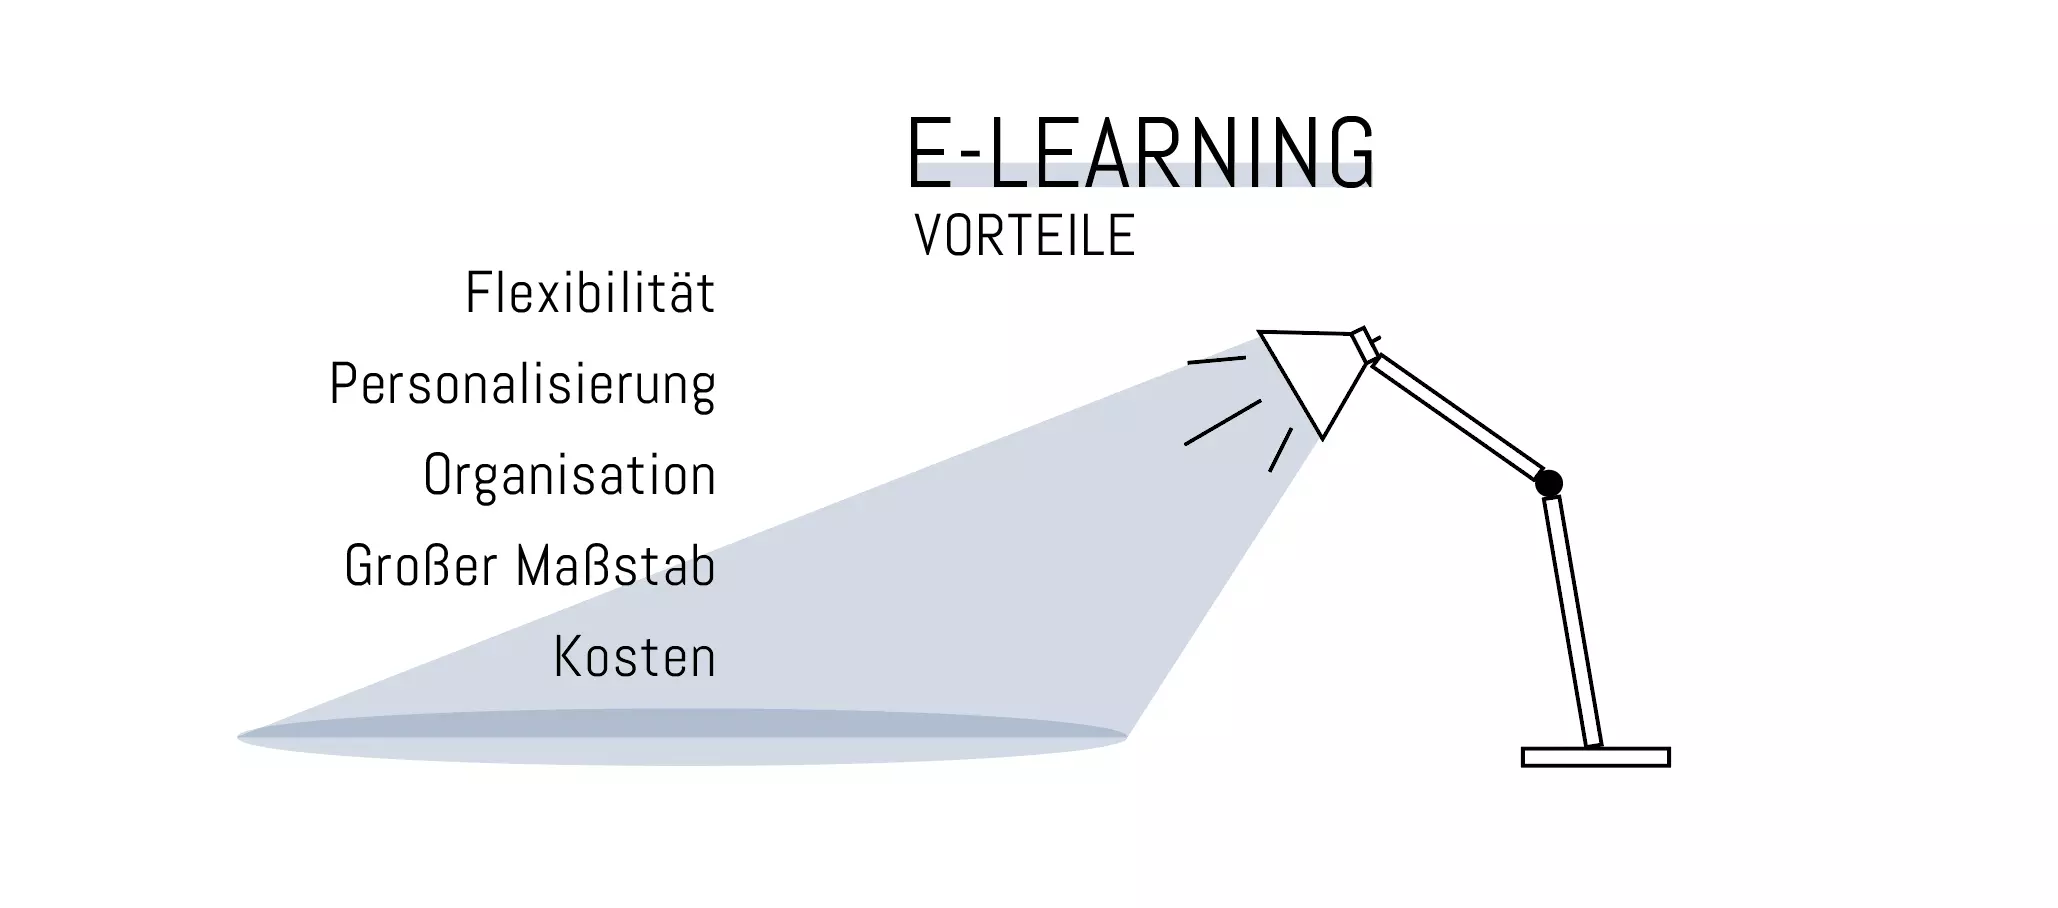 präsenzunterricht e learning blended learning ein vergleich